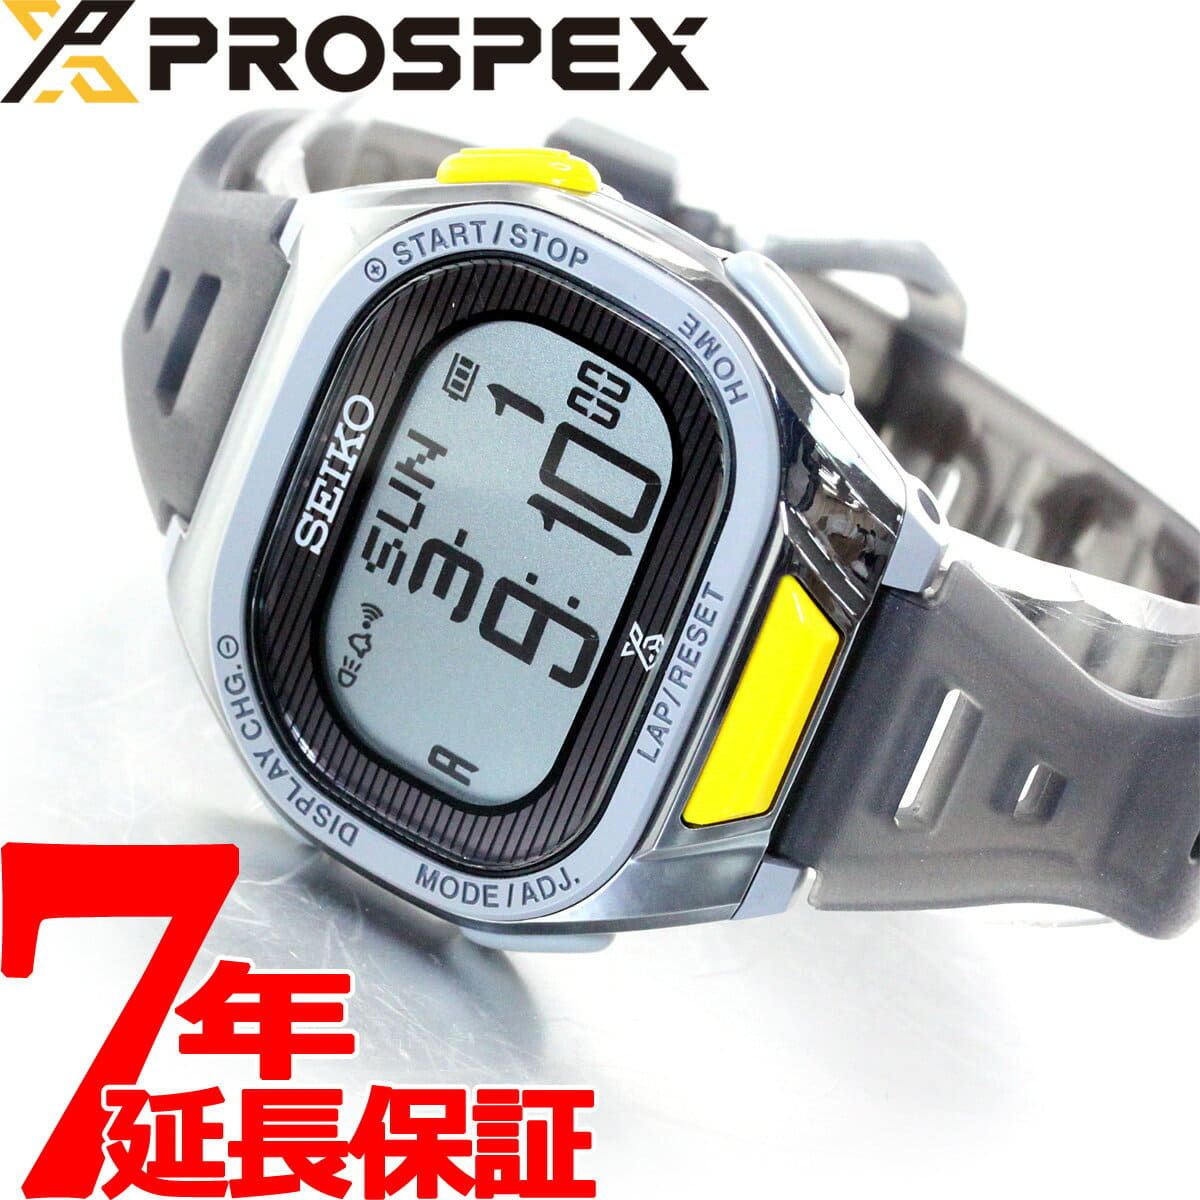 New]Seiko Prospex Super Runners Tokyo Marathon Unisex Solar Watch SBEF061 -  BE FORWARD Store